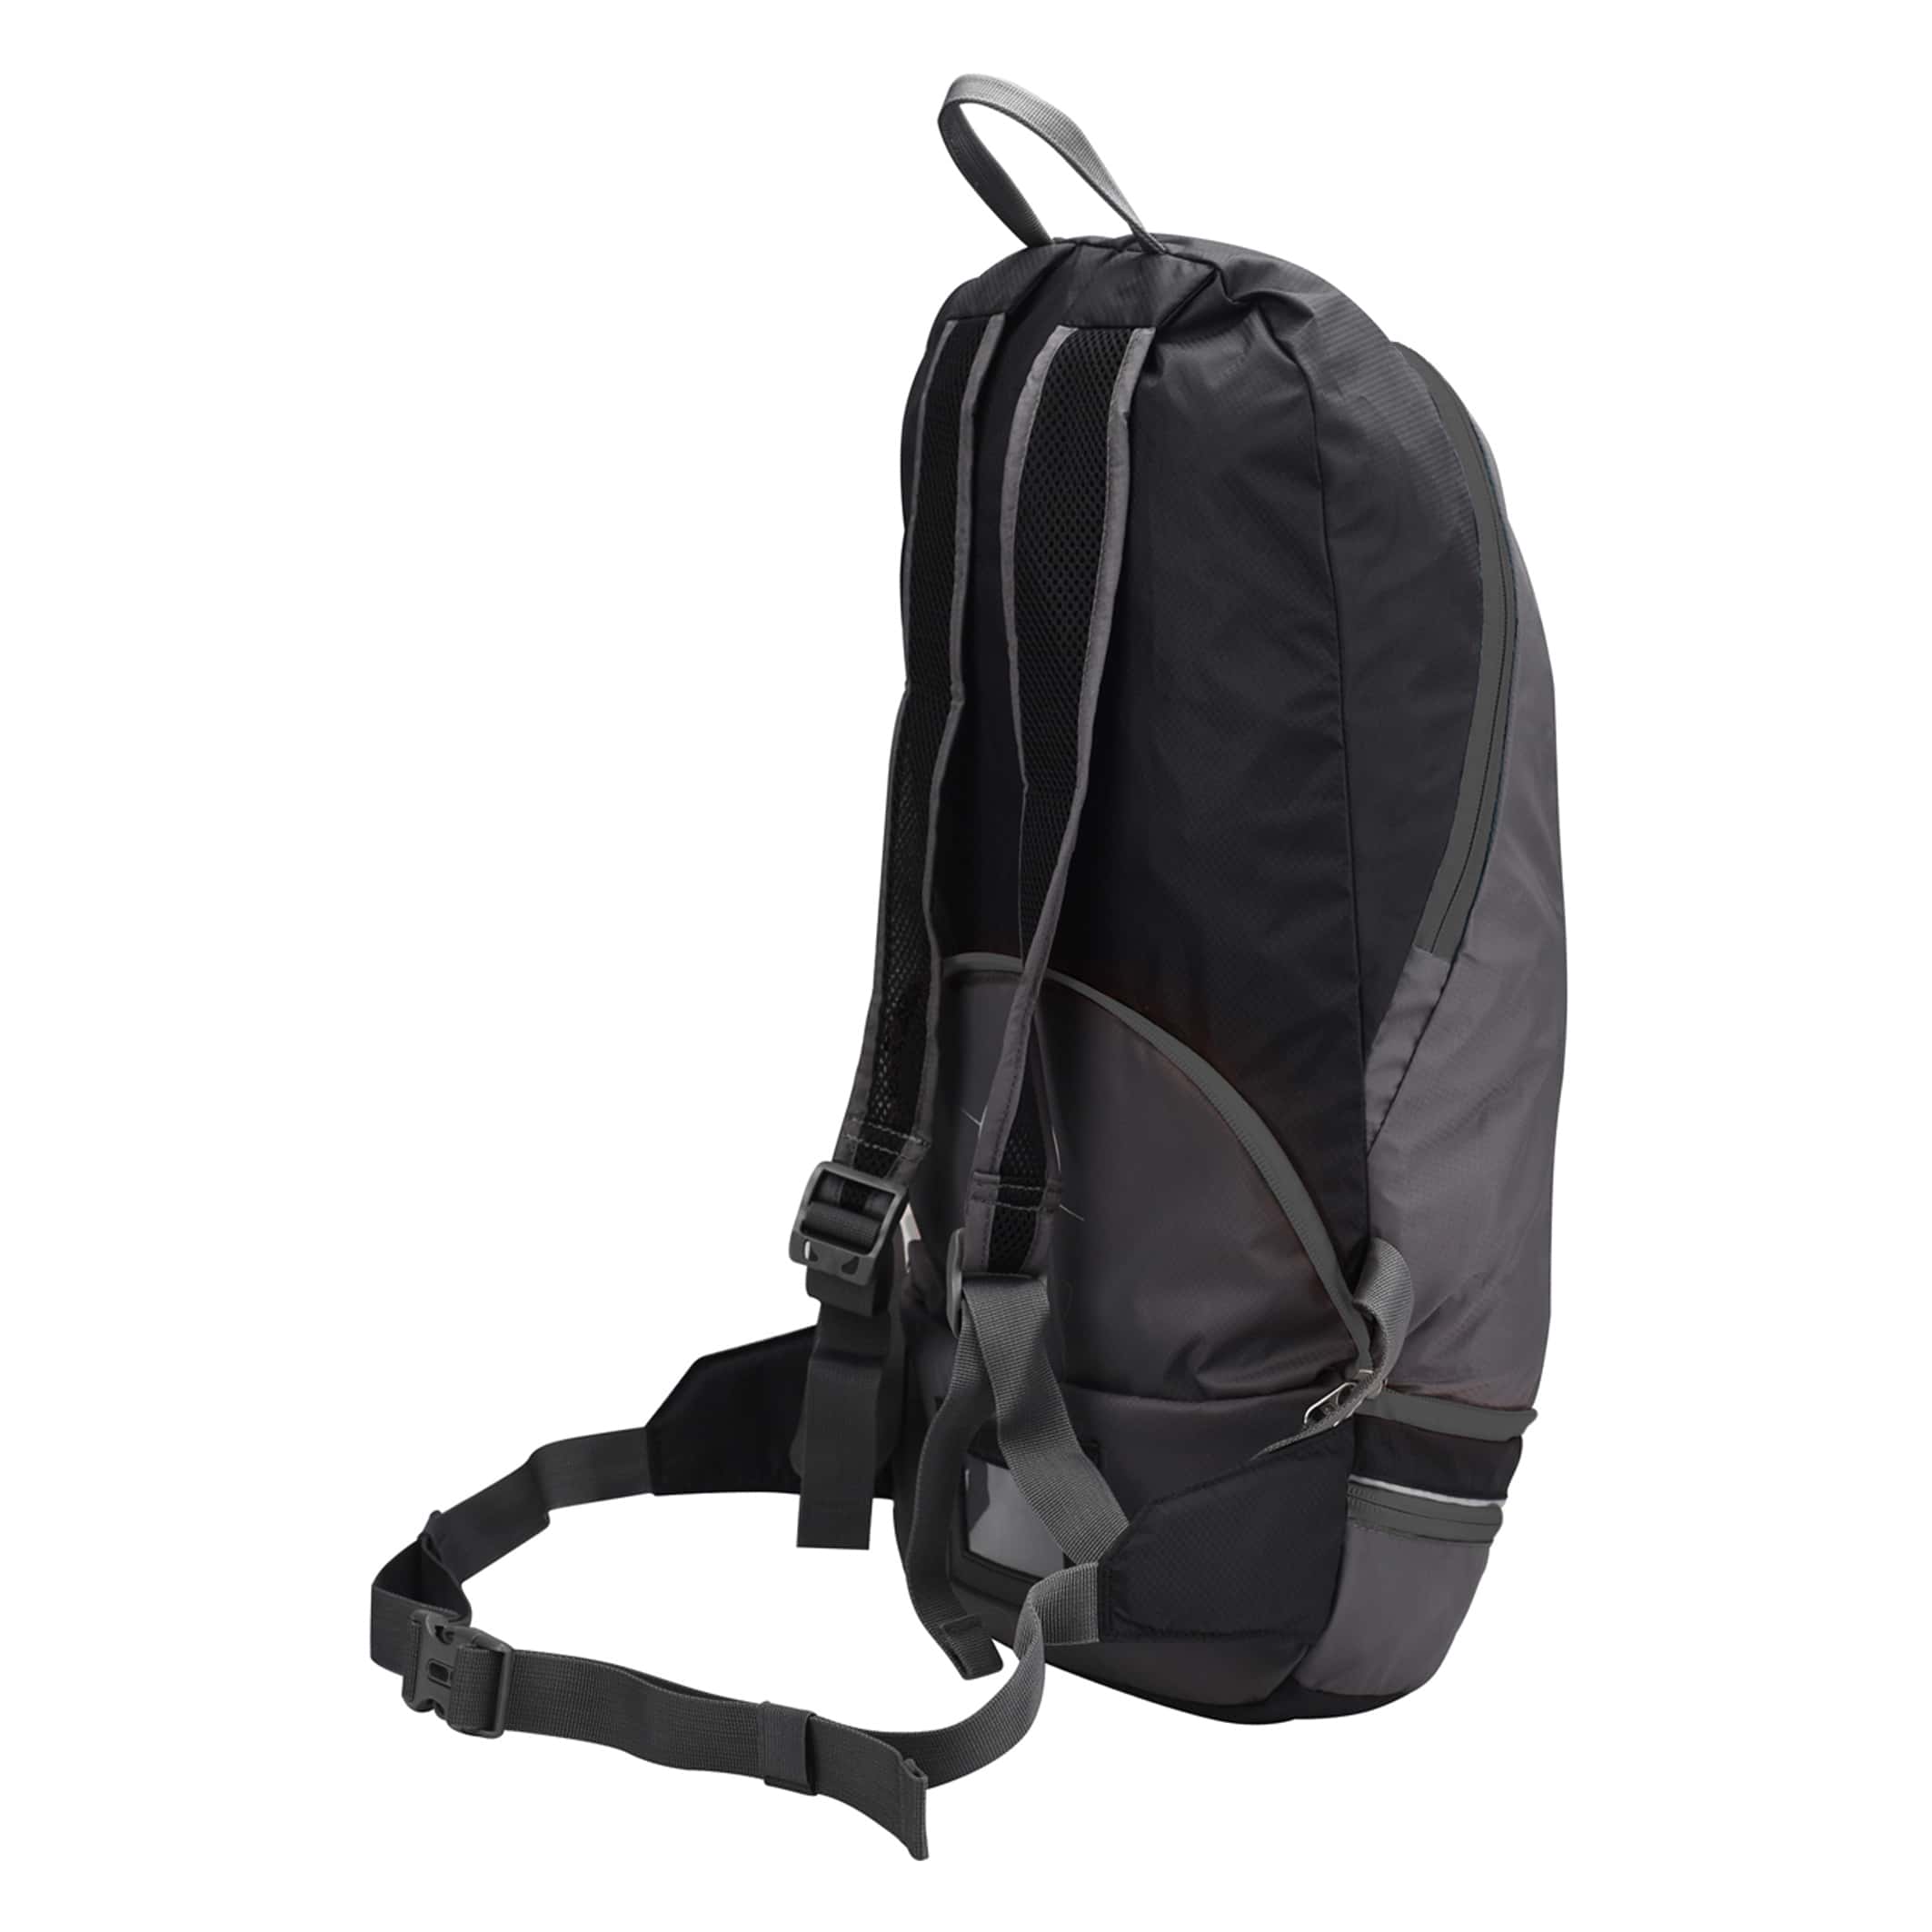 MB550-04-Backpack-2-in-1-Rock-Black-Side